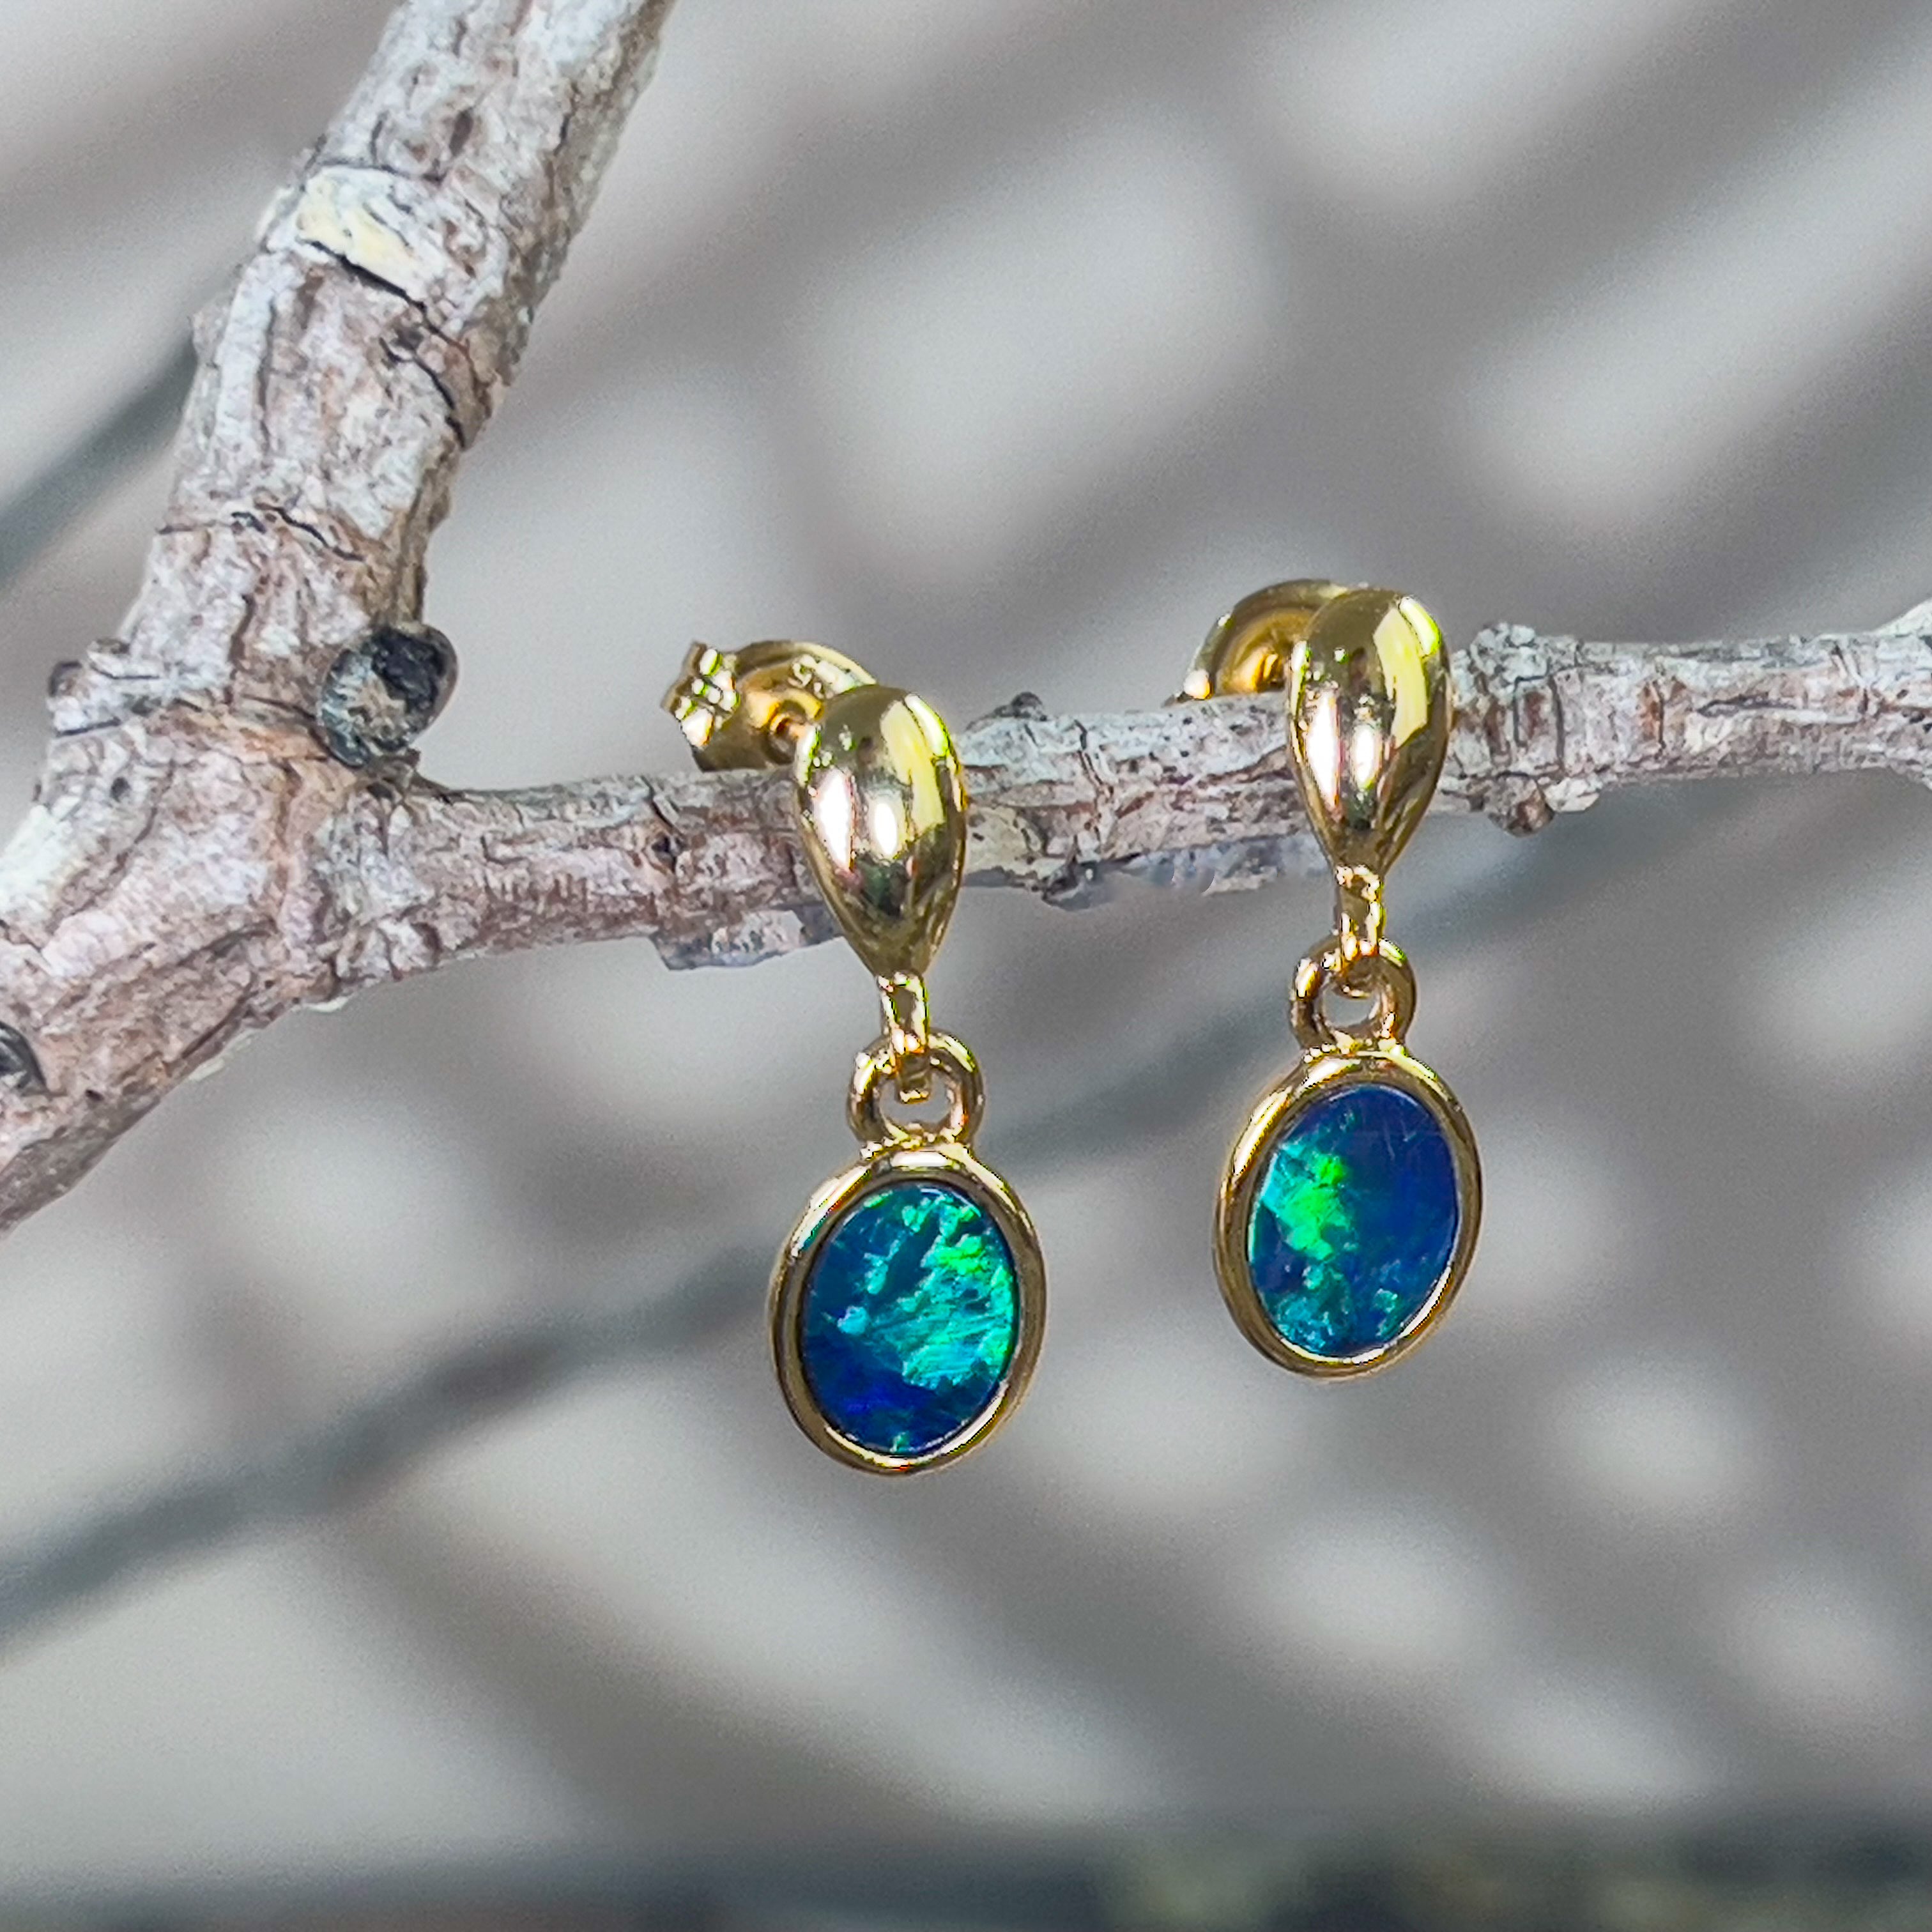 Gold plated dangling silver green blue opal doublet earring dangling - Masterpiece Jewellery Opal & Gems Sydney Australia | Online Shop